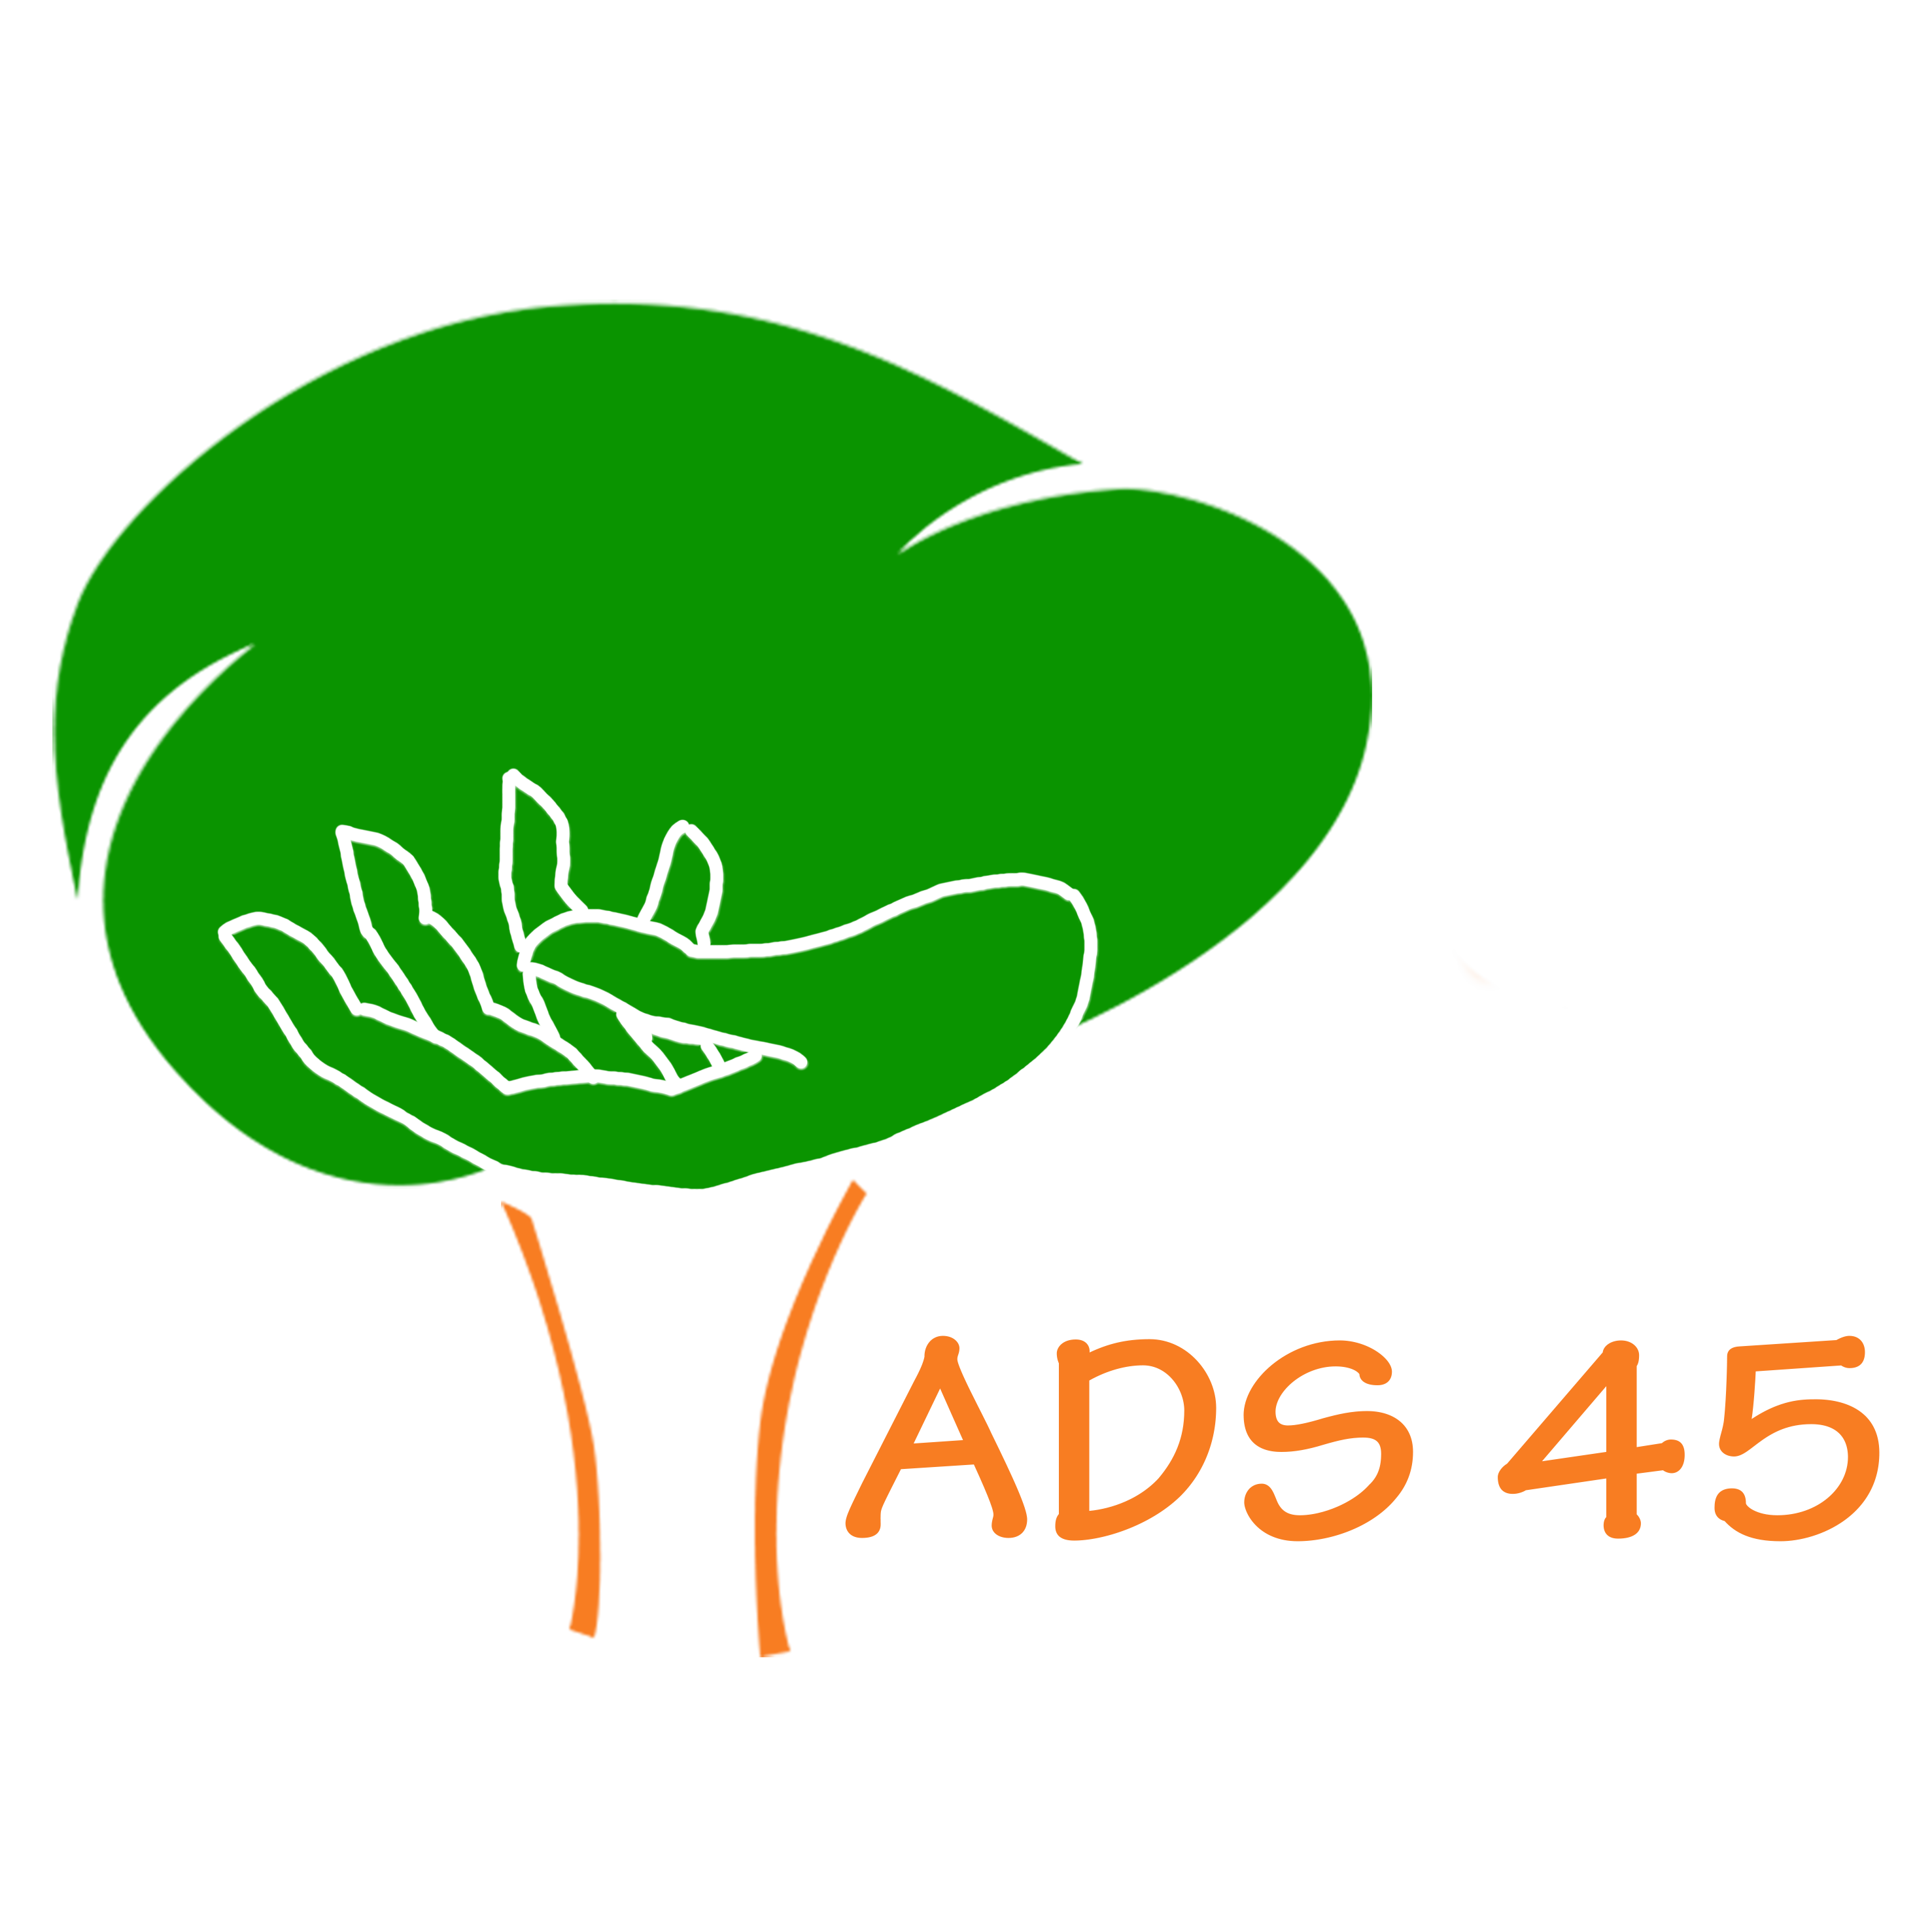 ADS45